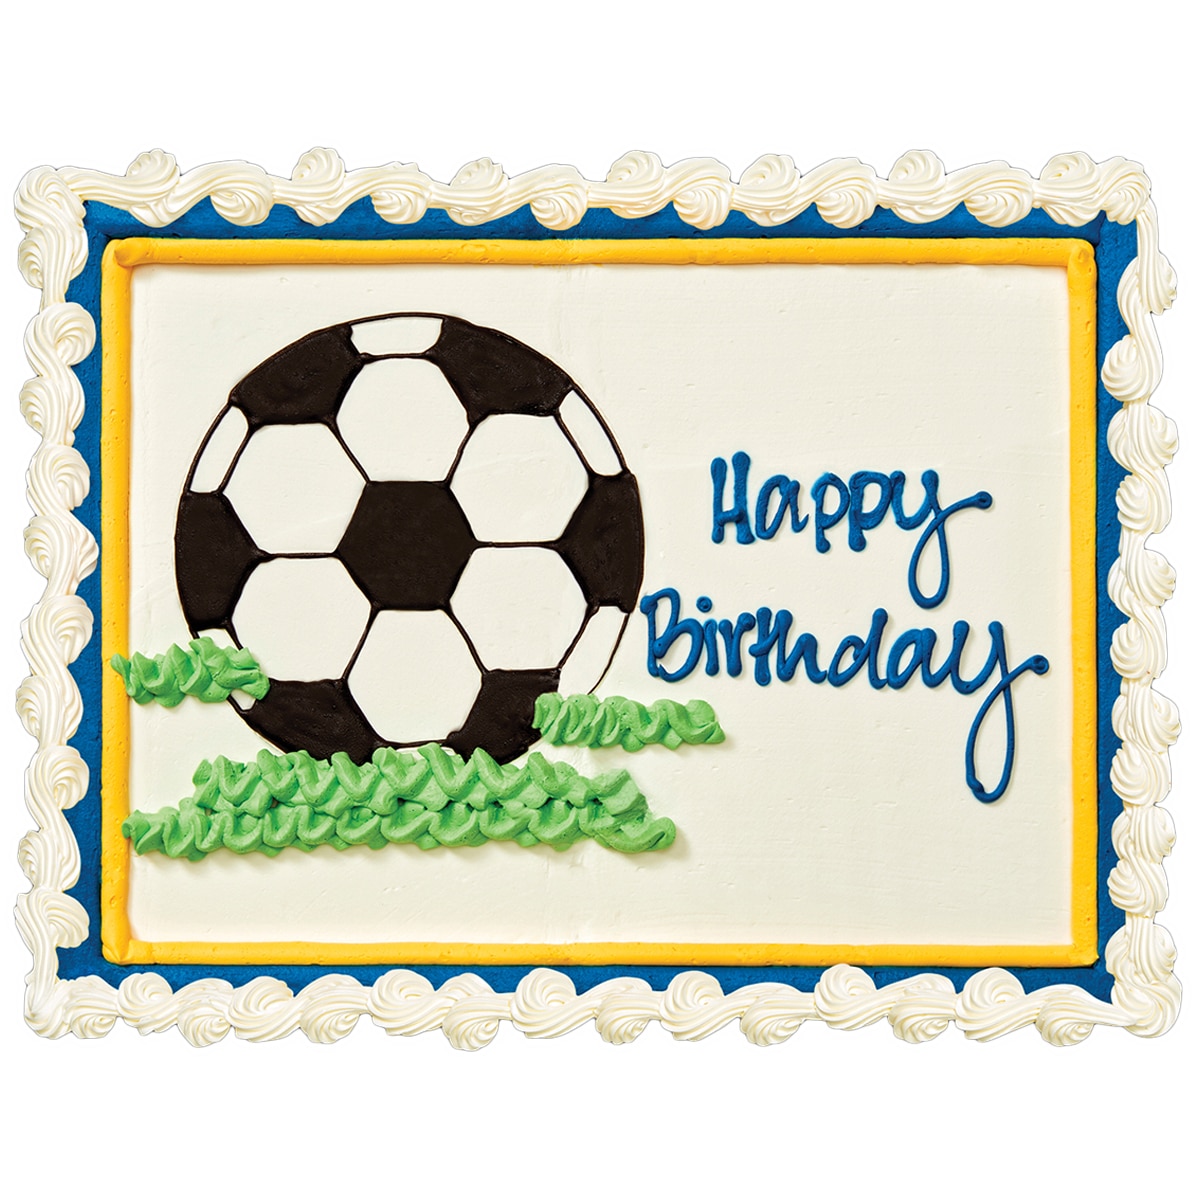 Happy Birthday - Soccer Cake